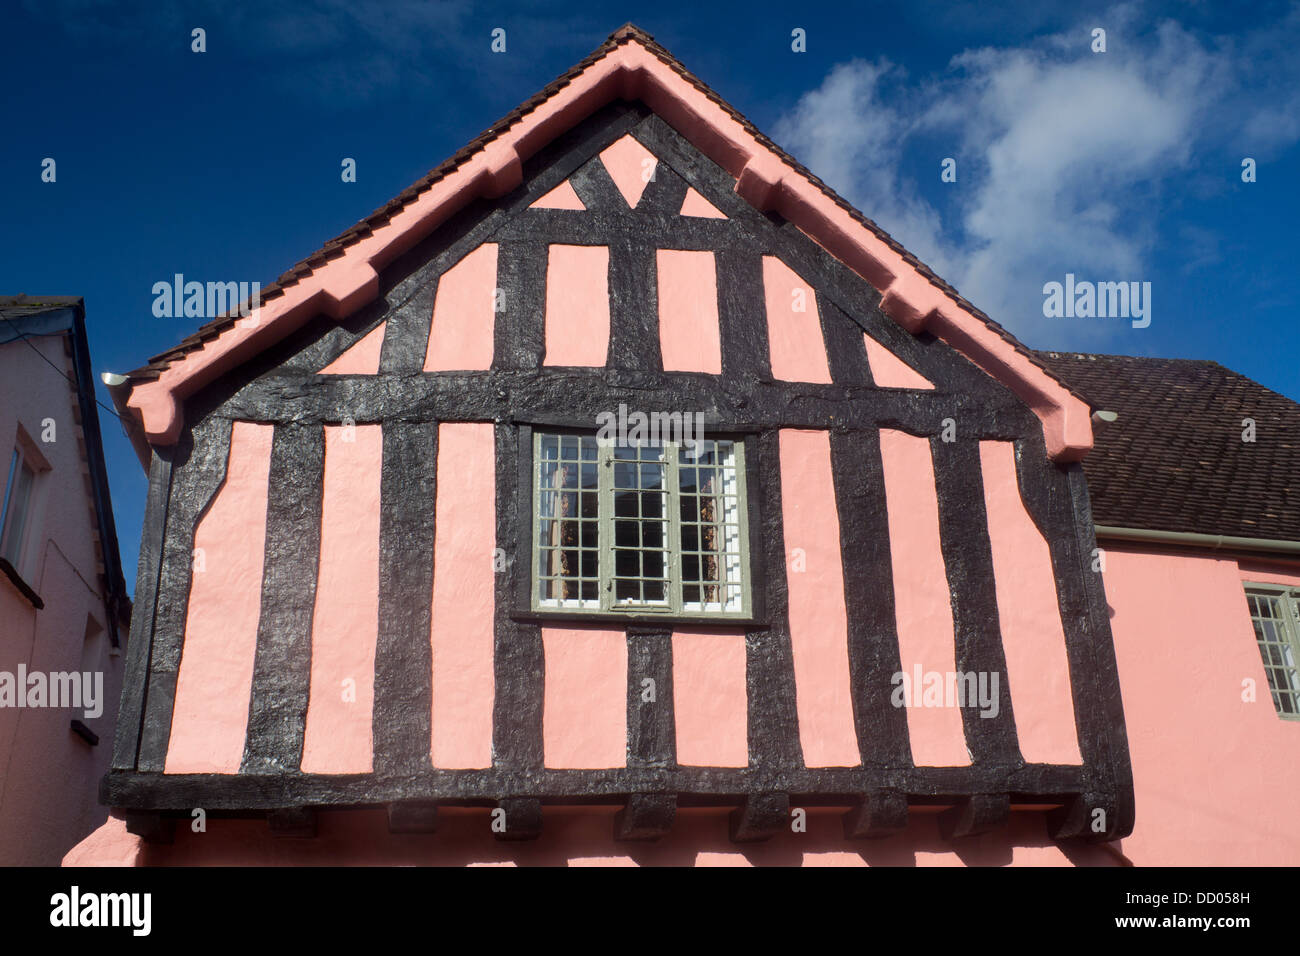 La vieille maison médiévale peint maison à colombages Usk Brynbuga Monmouthshire South Wales UK Banque D'Images